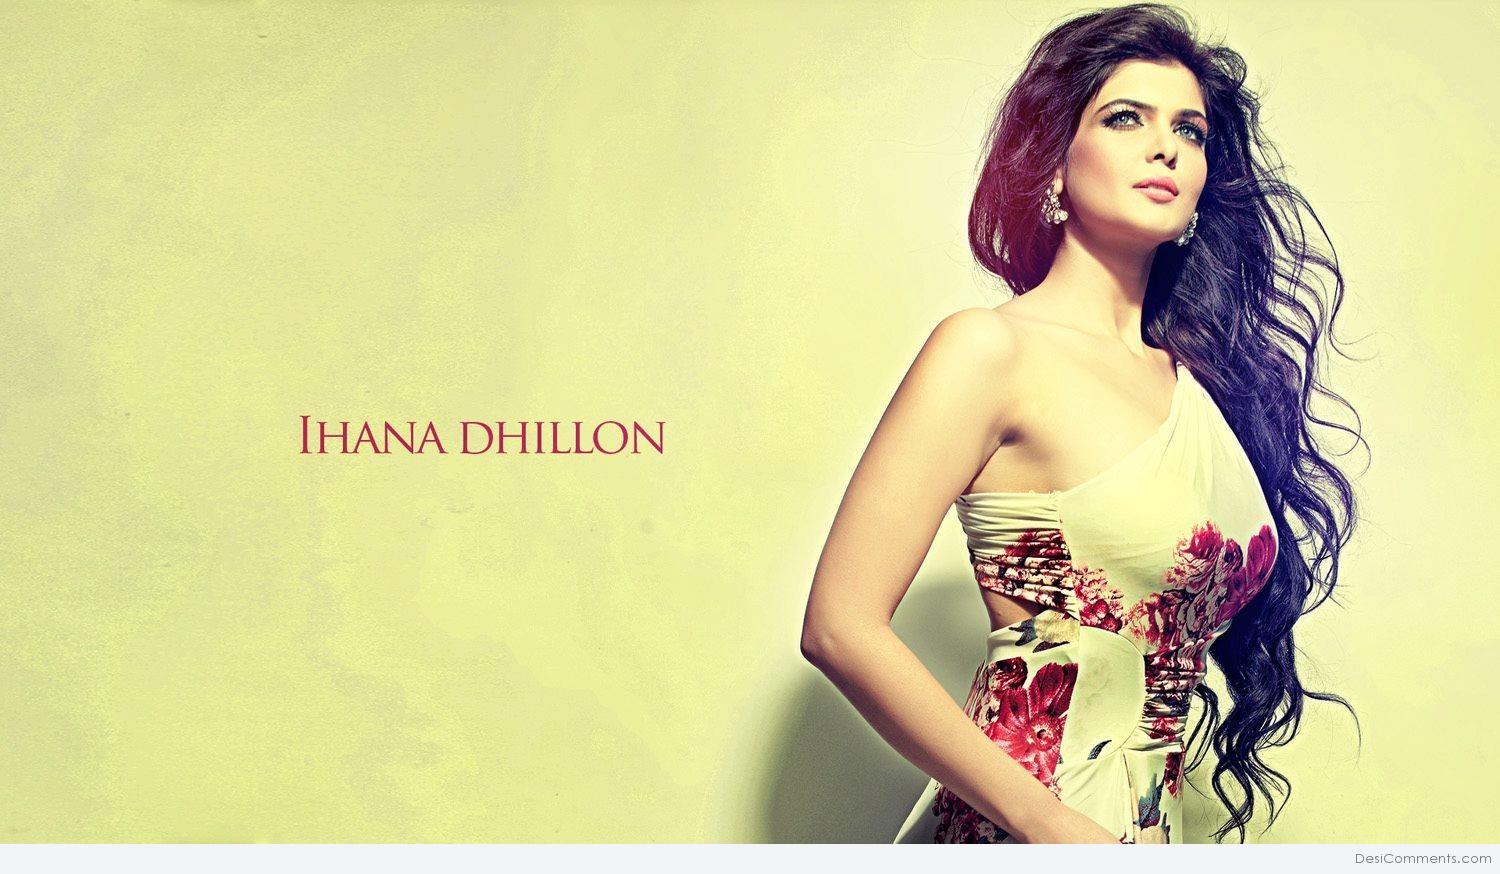 Ihana Dhillon HD wallpapers, Desktop wallpaper - most viewed